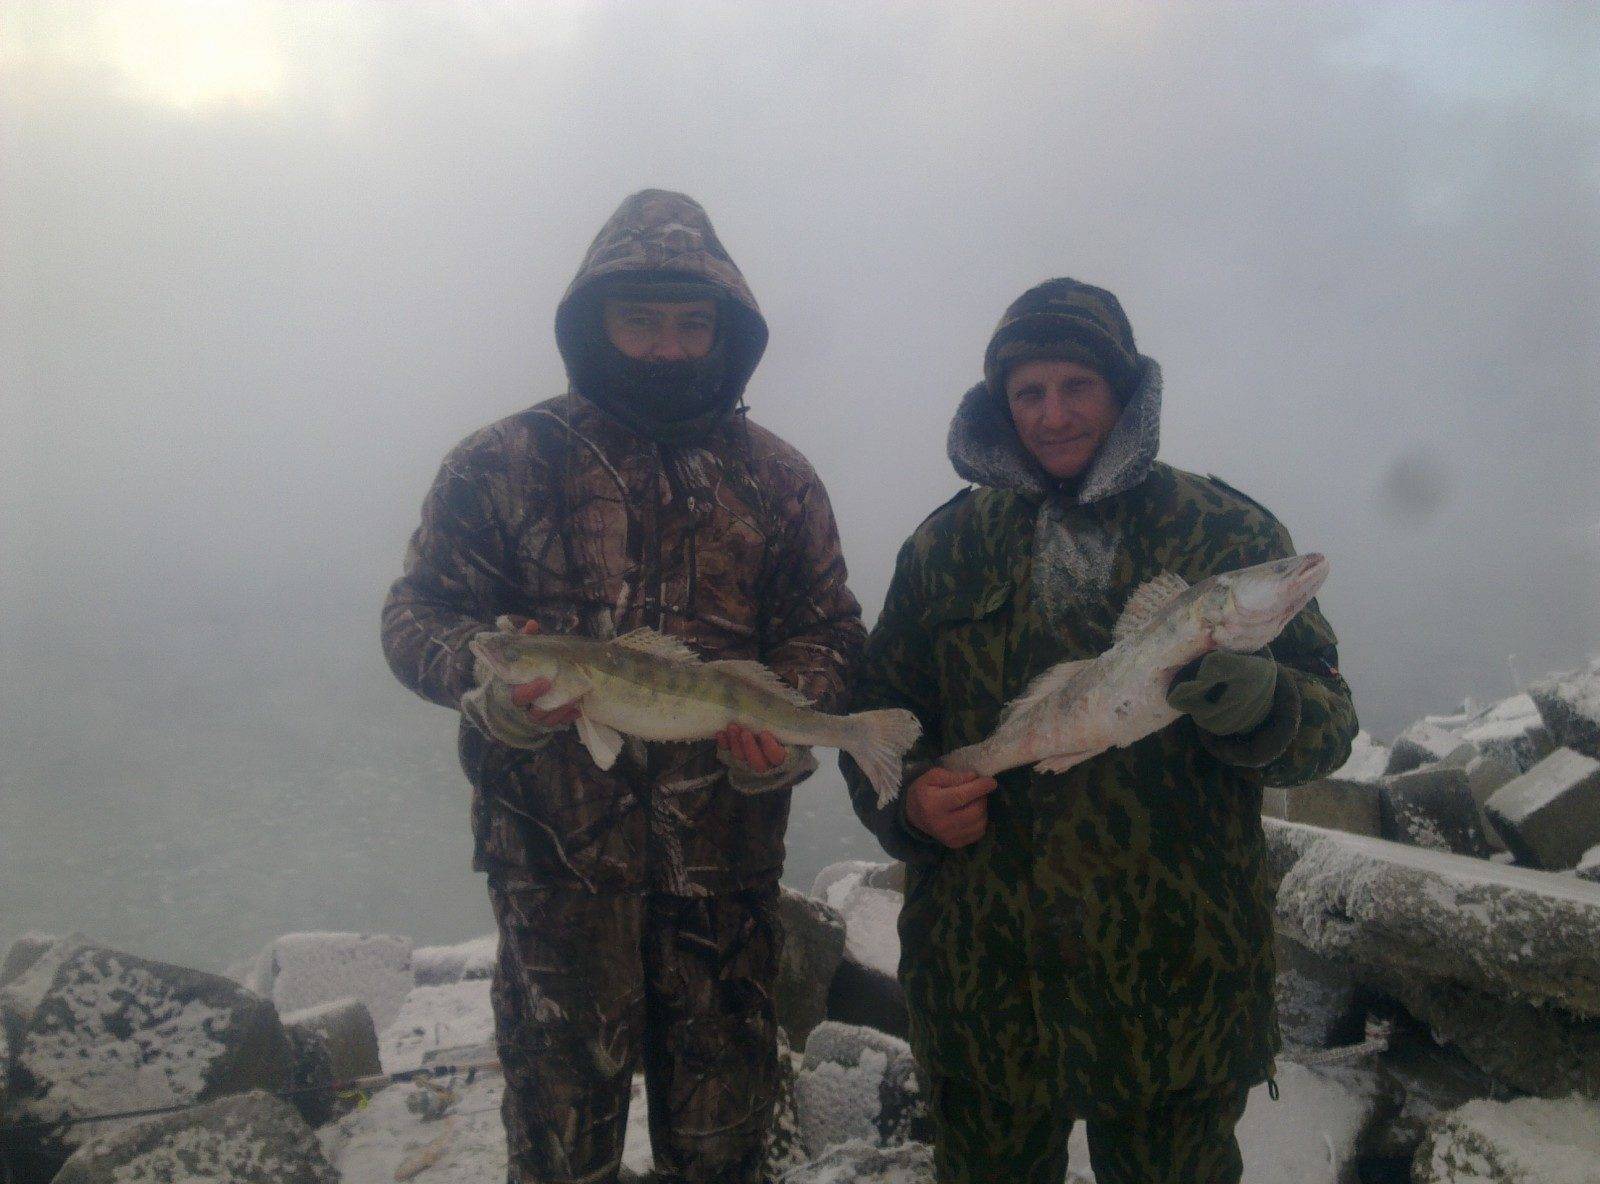 Рыбалка в ставропольском крае